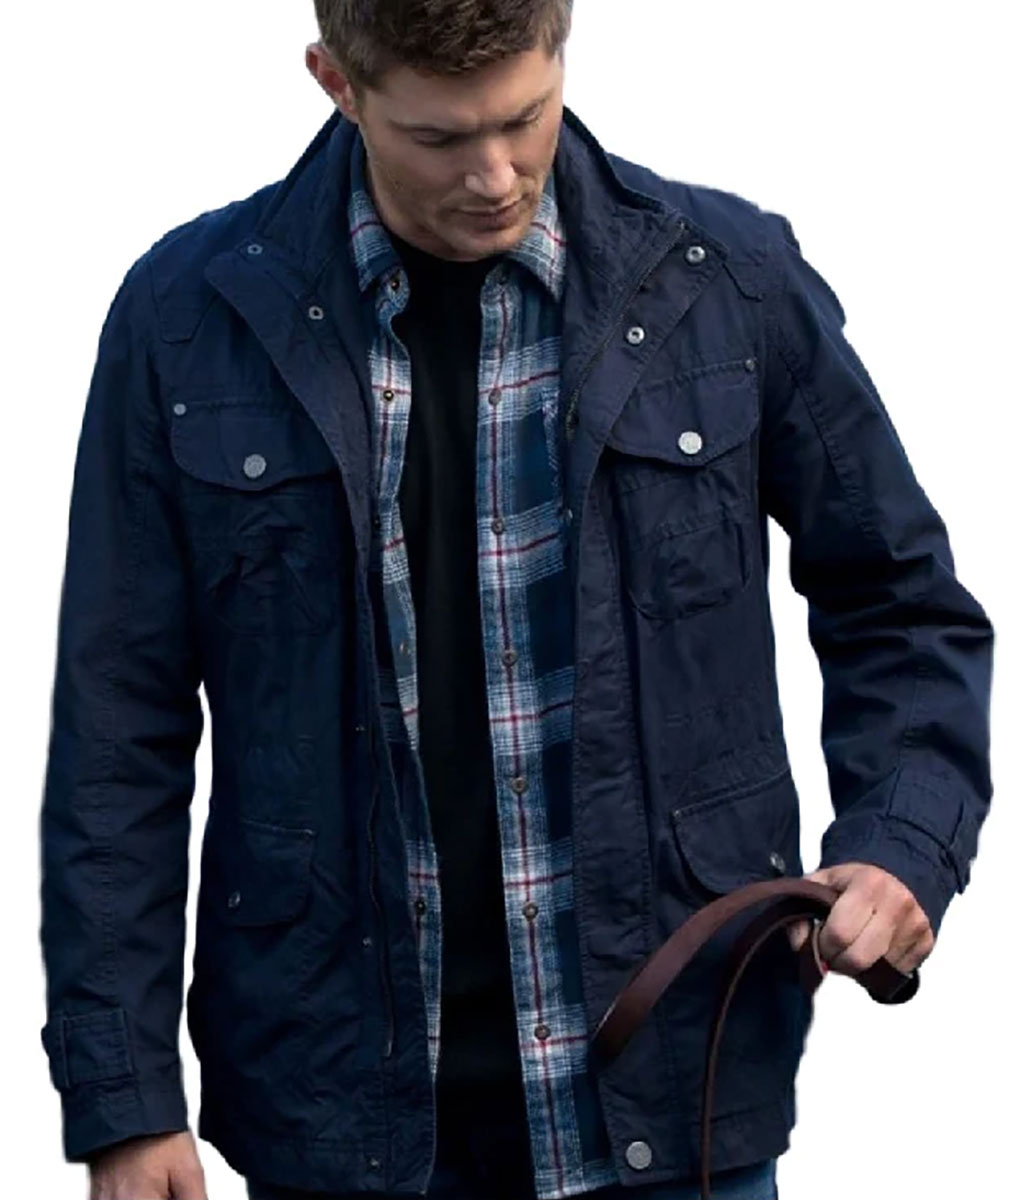 Jensen Ackles Supernatural Blue Jacket (1)